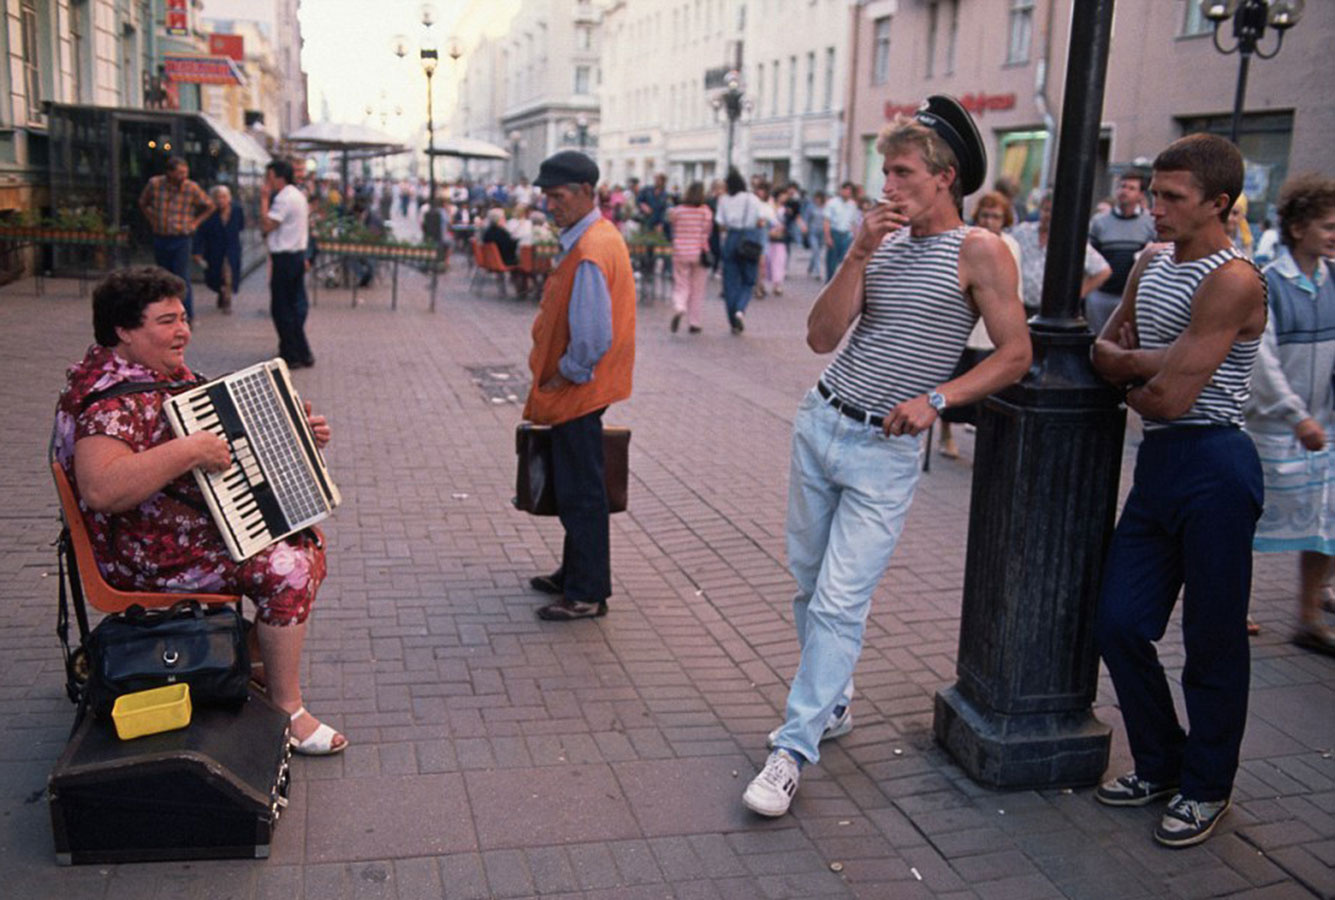 Повседневная жизнь россии в 1990